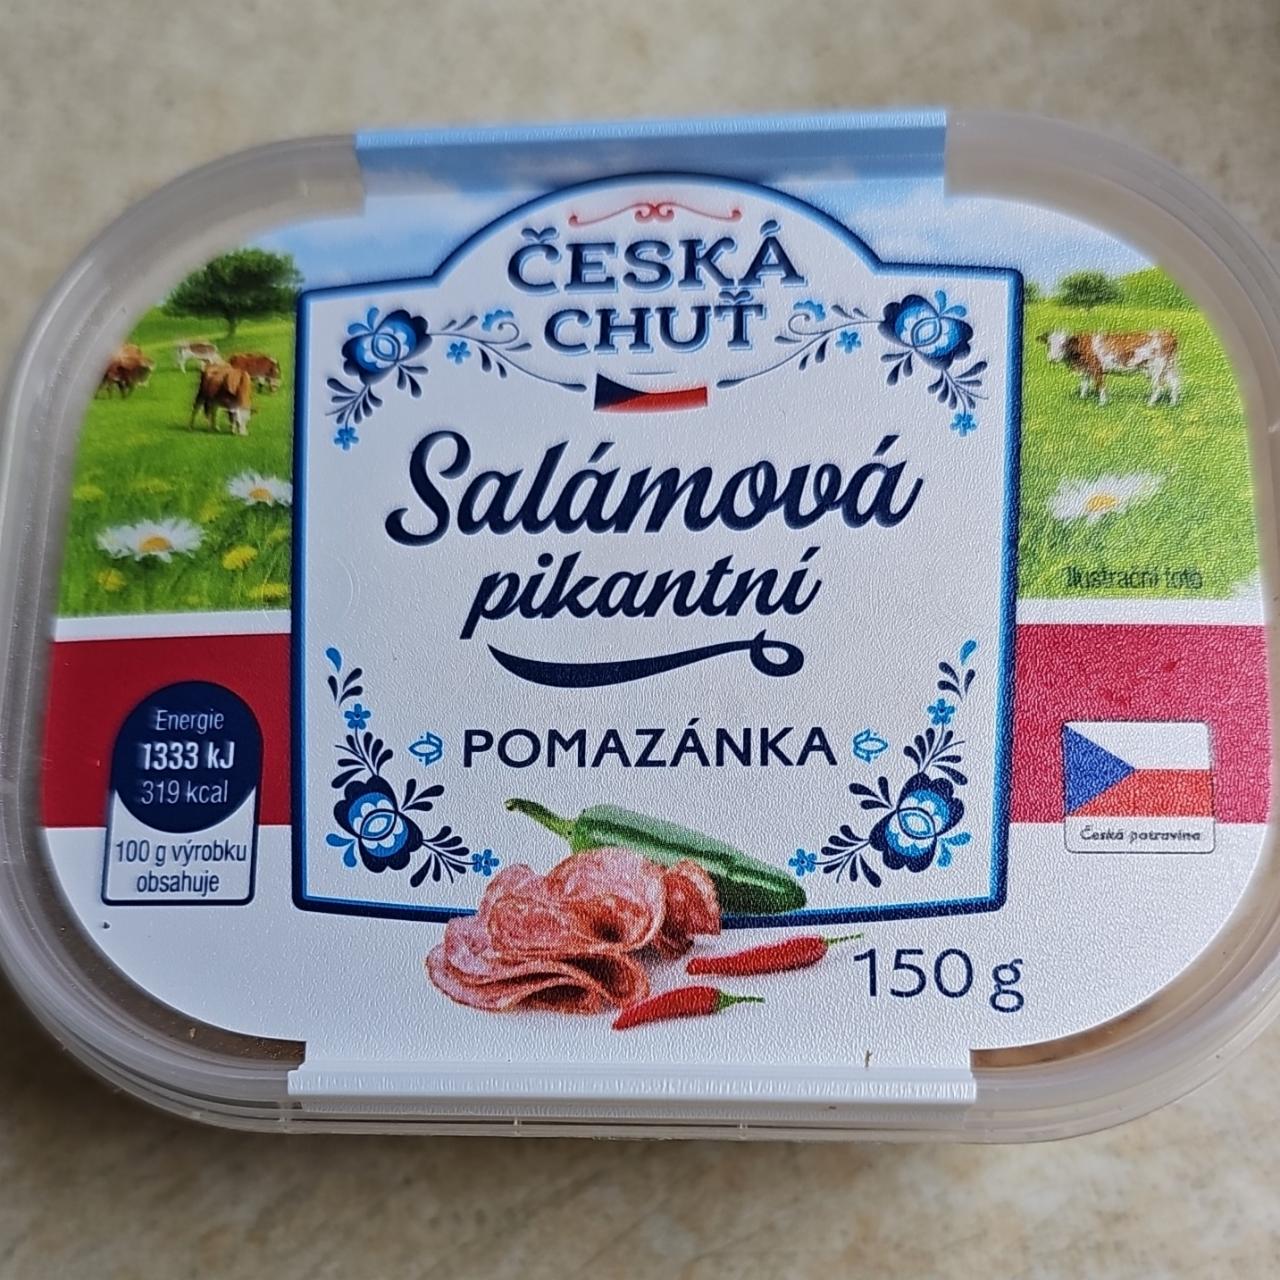 Fotografie - Salámová pikantní pomazánka Česká chuť